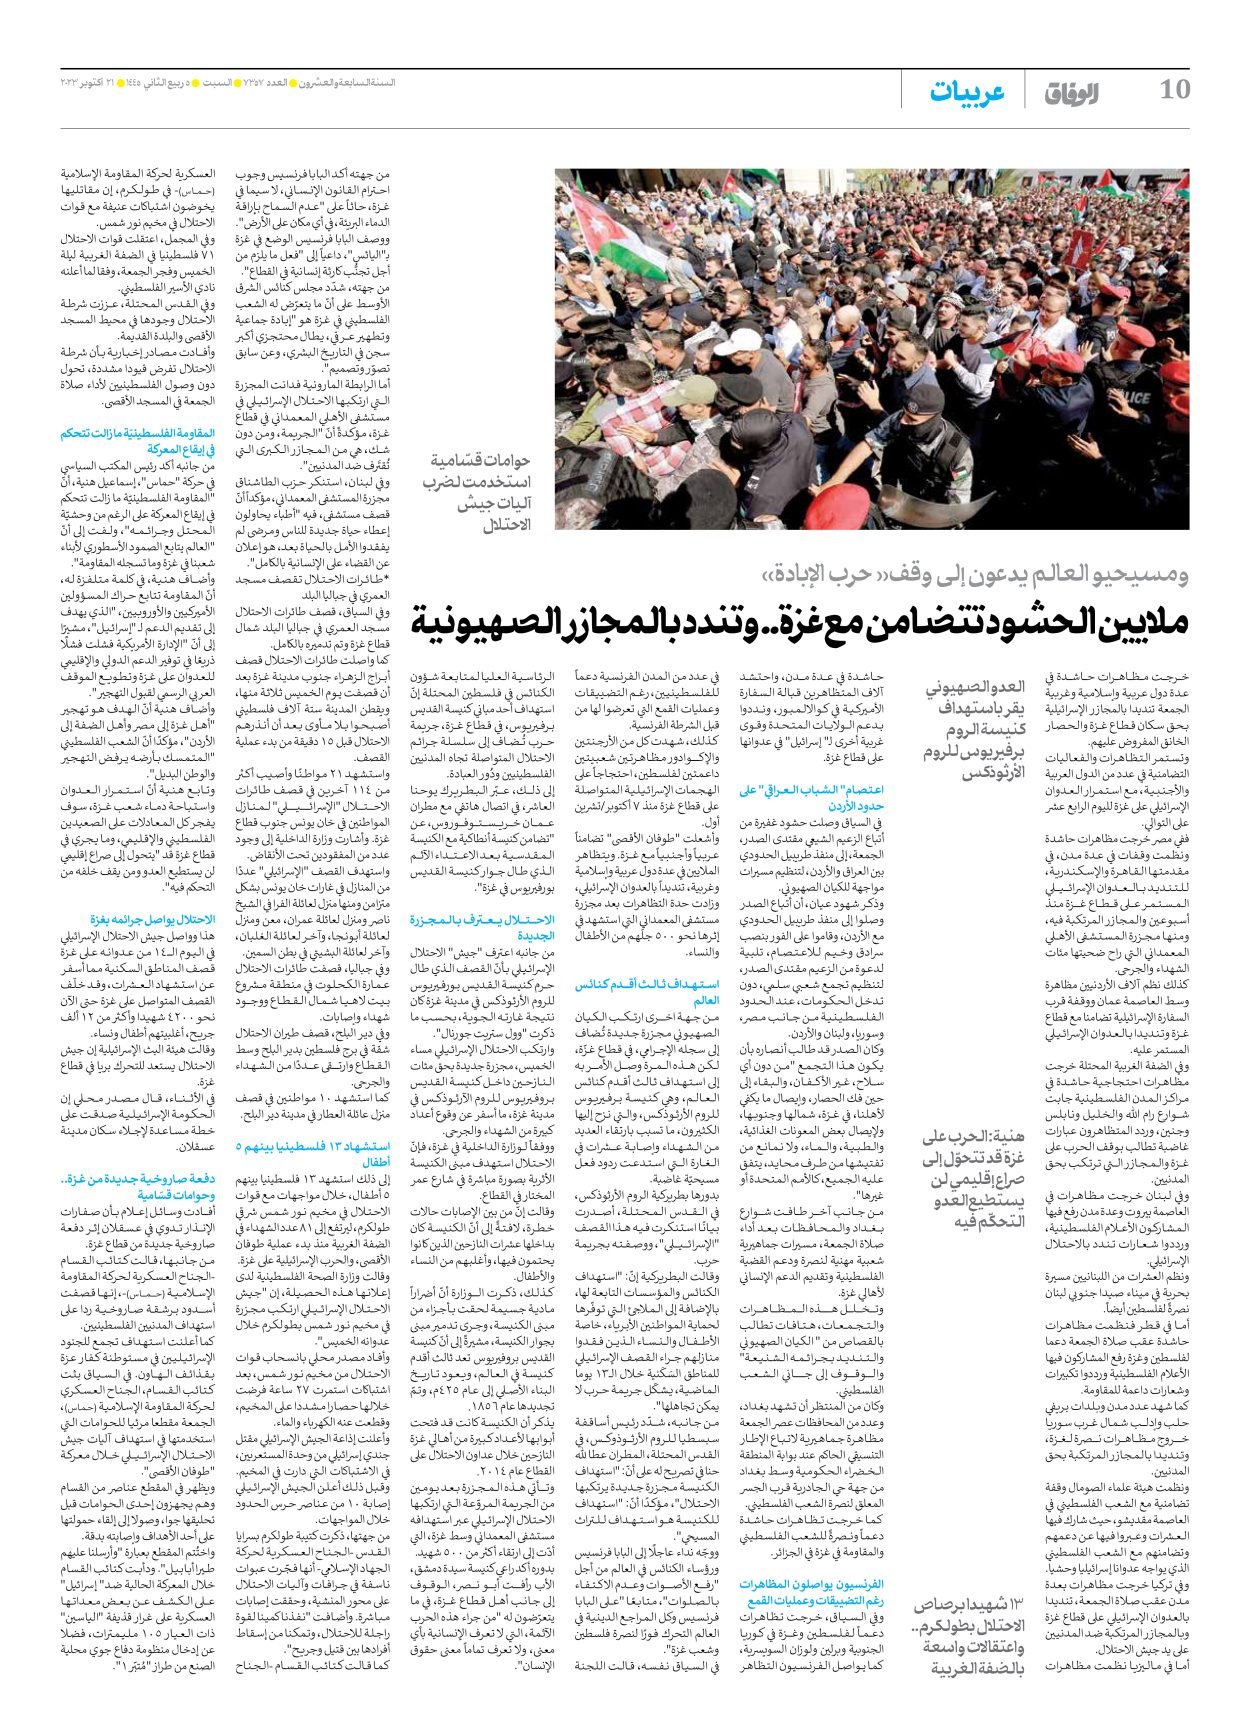 صحیفة ایران الدولیة الوفاق - العدد سبعة آلاف وثلاثمائة وسبعة وخمسون - ٢١ أكتوبر ٢٠٢٣ - الصفحة ۱۰